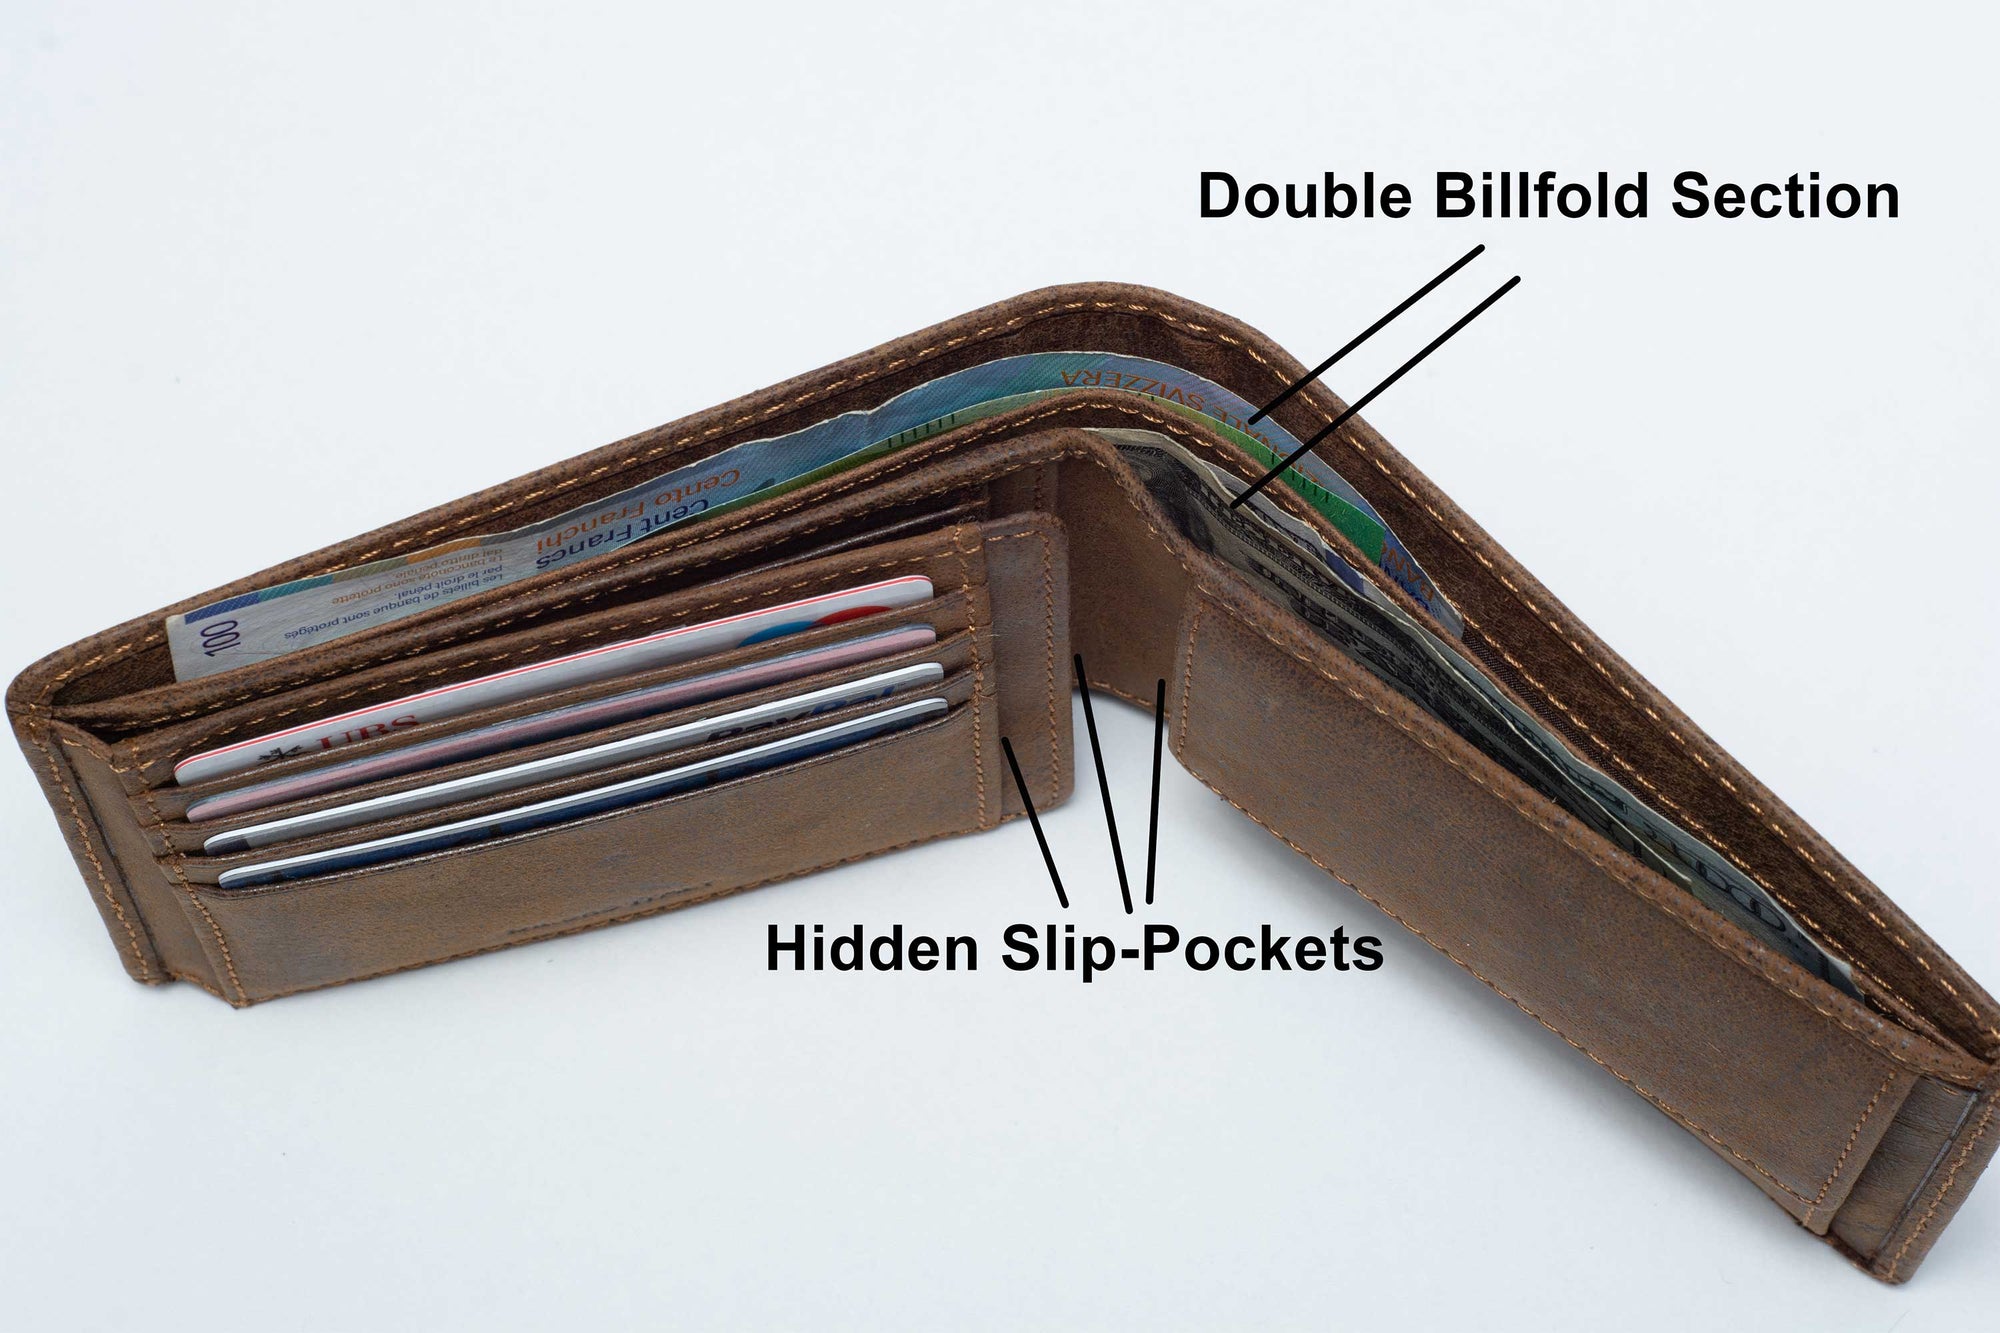 DiLoro Large RFID Blocking Men's Bifold Leather Wallet Vertical Dark Hunter Brown